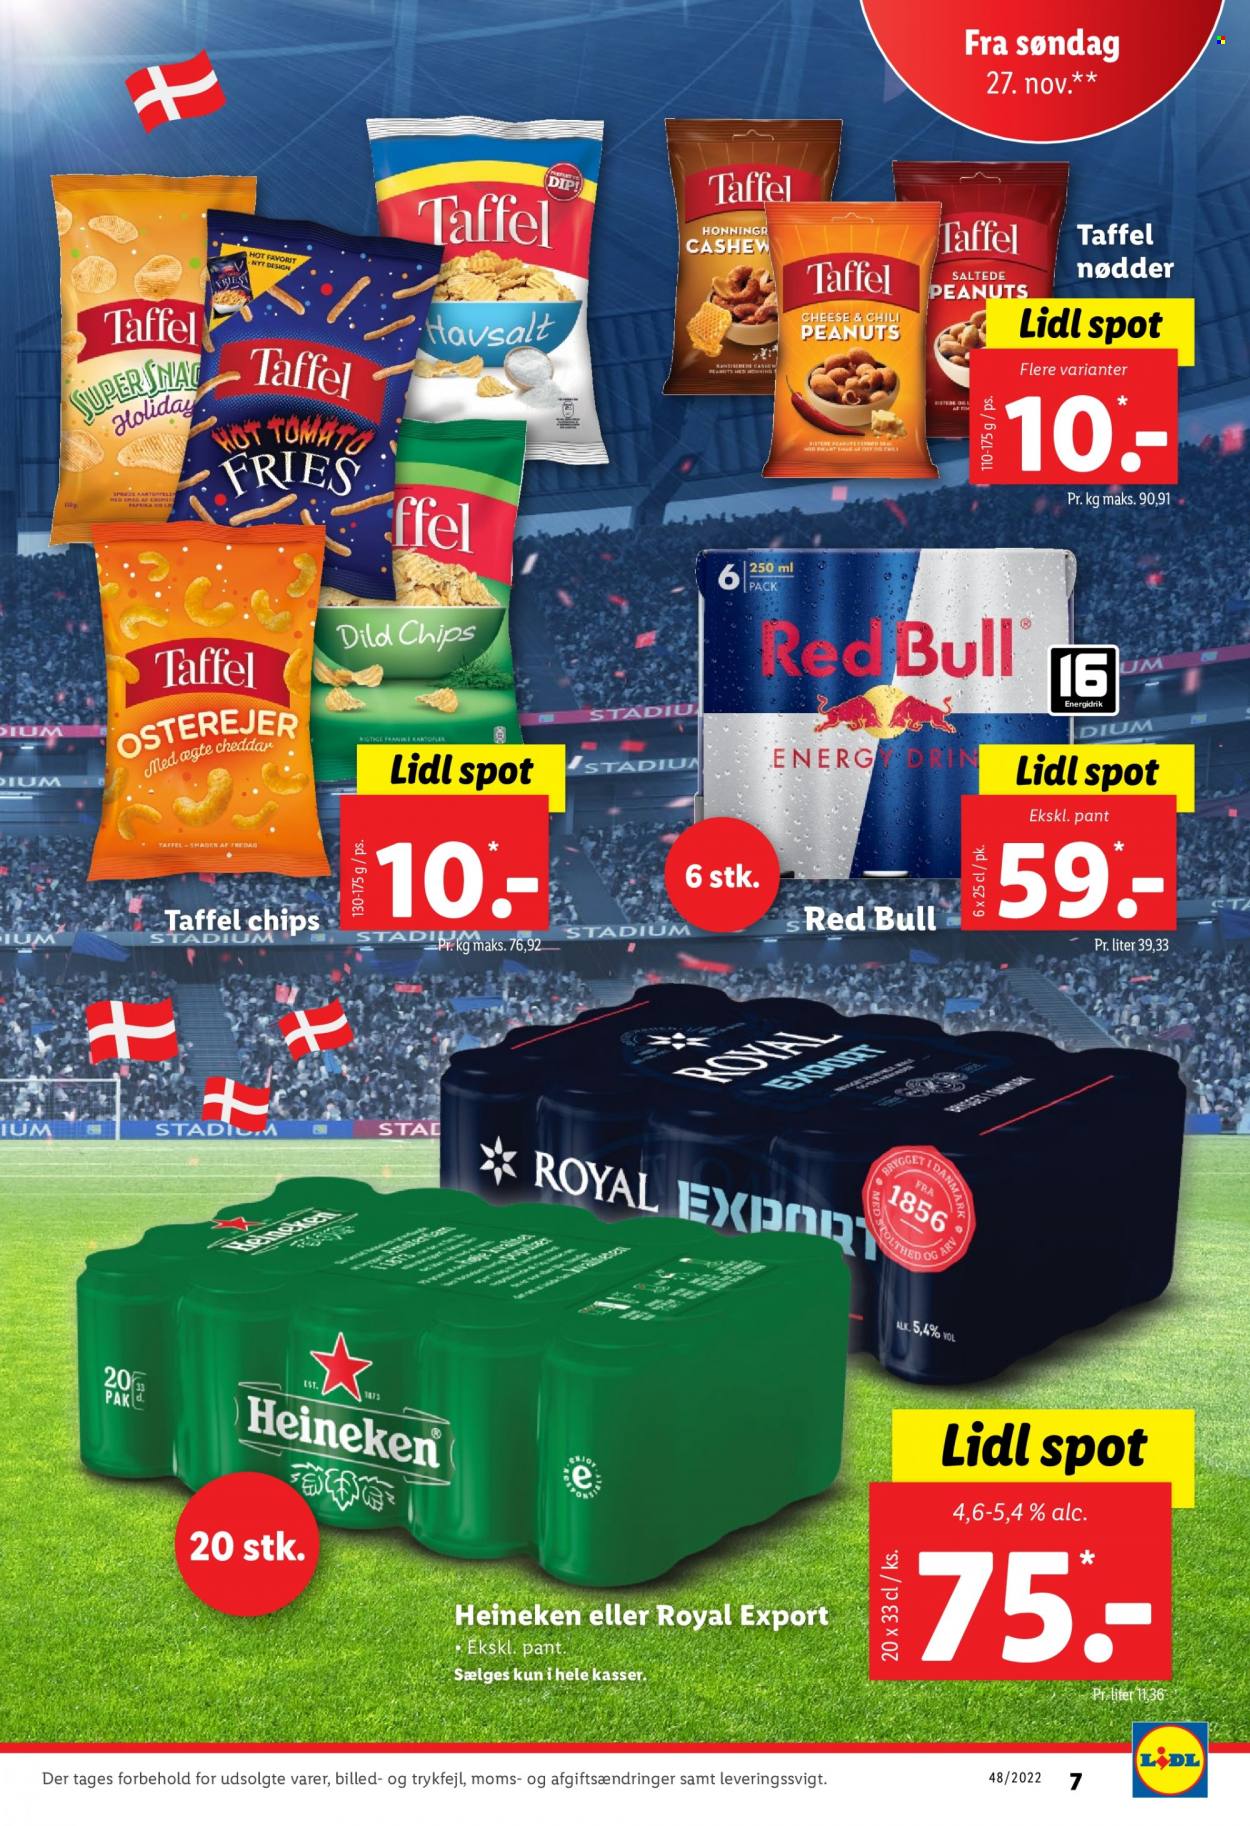 thumbnail - Lidl tilbud  - 27.11.2022 - 3.12.2022 - tilbudsprodukter - Heineken, Royal Pilsner, øl, cheddar, chips, dild, honning, nødder, peanuts, energidrik, red bull. Side 7.